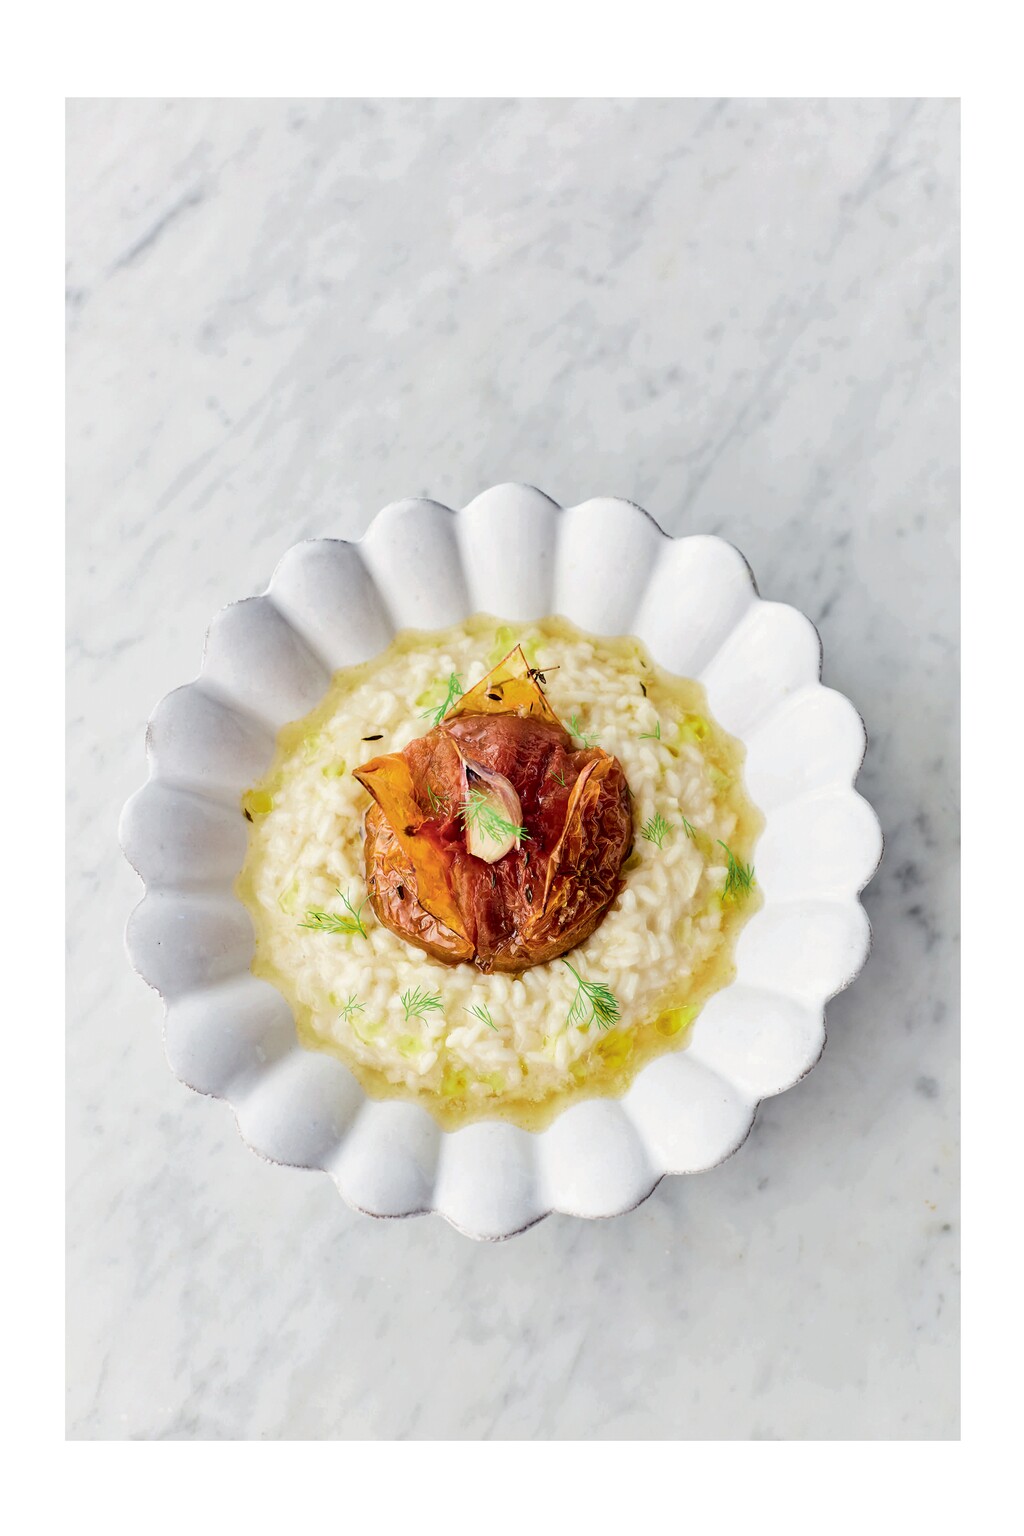 achtergrond weggooien Weggooien Jamie Oliver's risotto met geroosterde tomaat - 24Kitchen